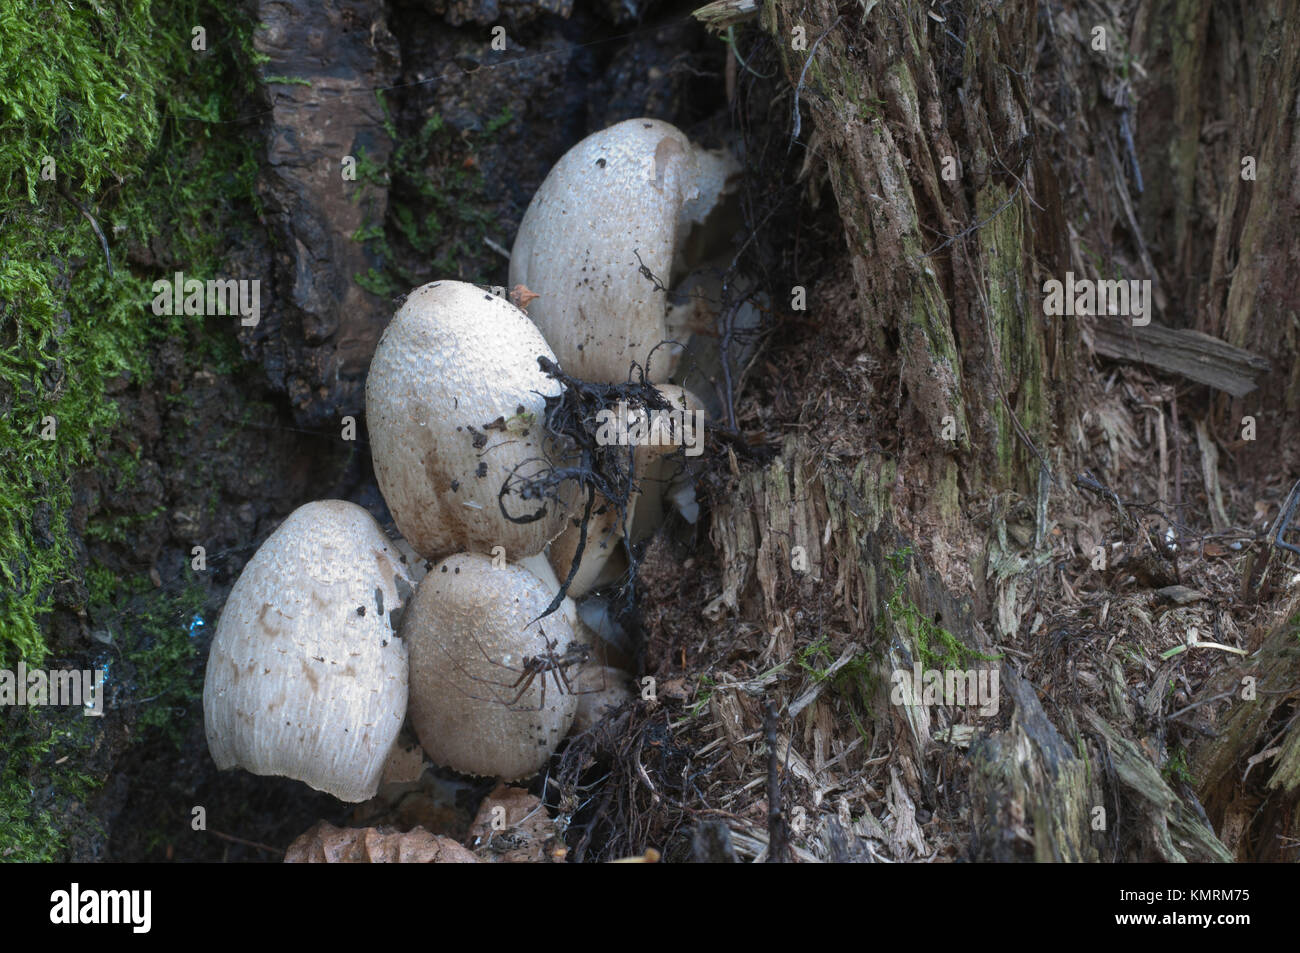 Coprinus atramentarius mushrooms in autumn, close up Stock Photo